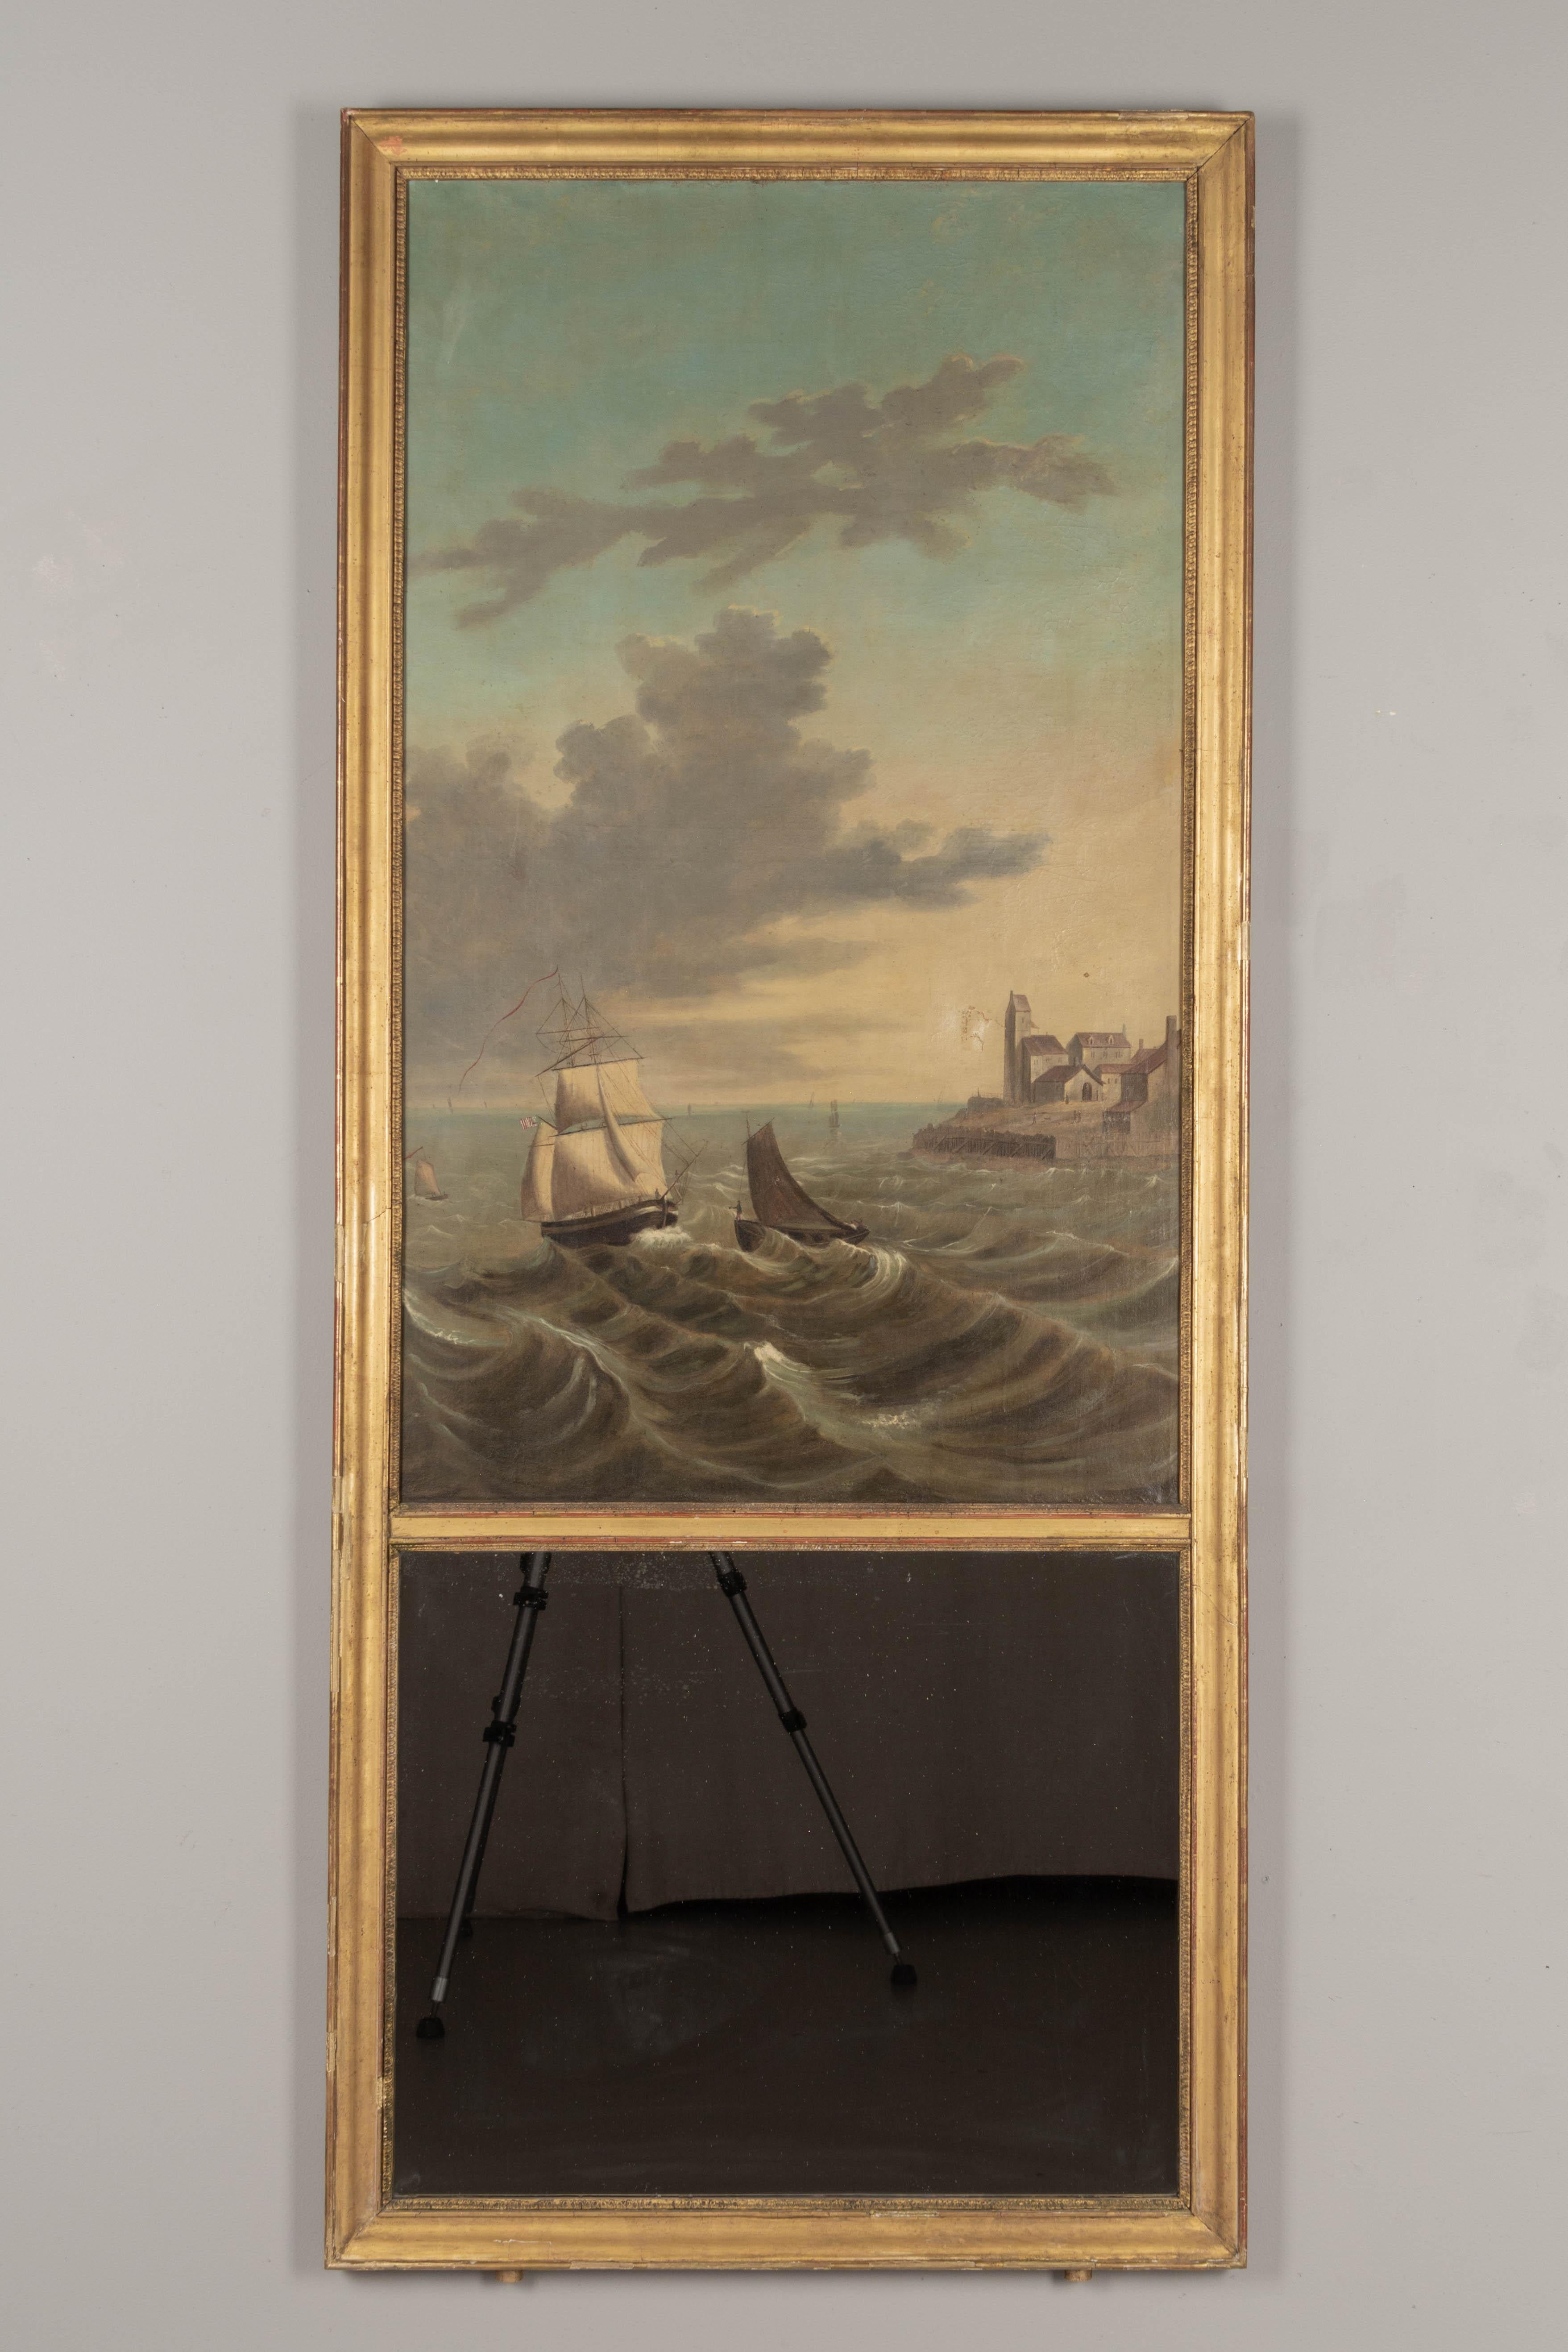 Ein französischer Trumeau-Spiegel im Stil Louis XV aus dem frühen 19. Jahrhundert mit einem großen Ölgemälde, das eine Meereslandschaft mit Schiffen an einer stürmischen Küste zeigt. Das Segeltuch hat einen alten reparierten Riss und wurde